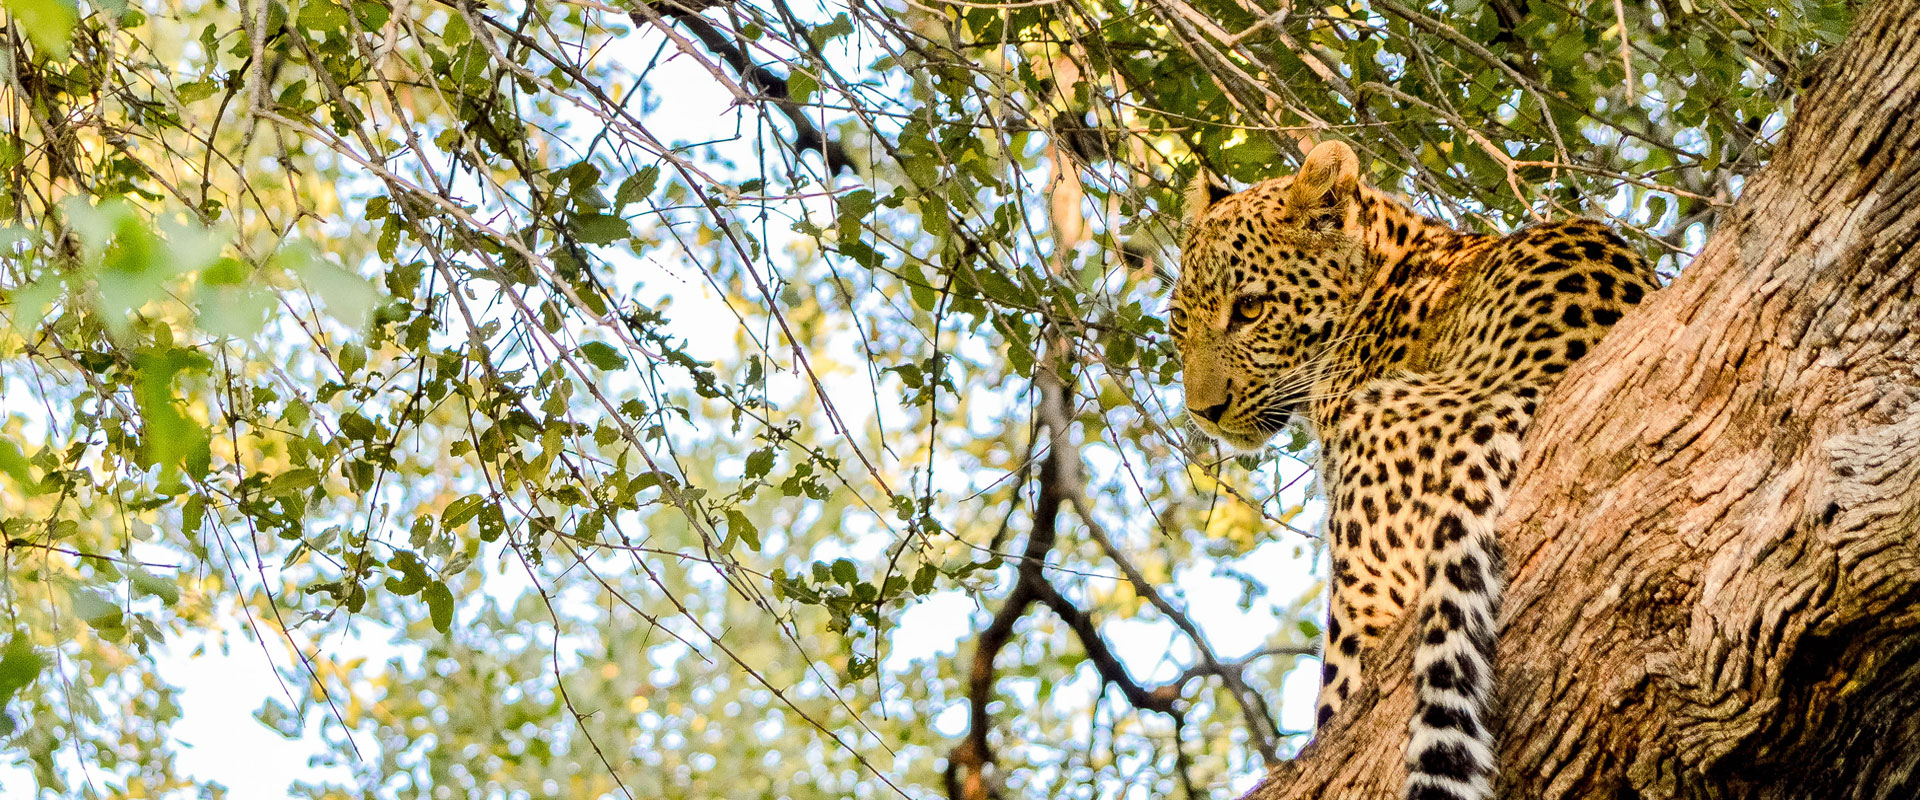 Botswana & Mozambique Luxury Safari Holidays